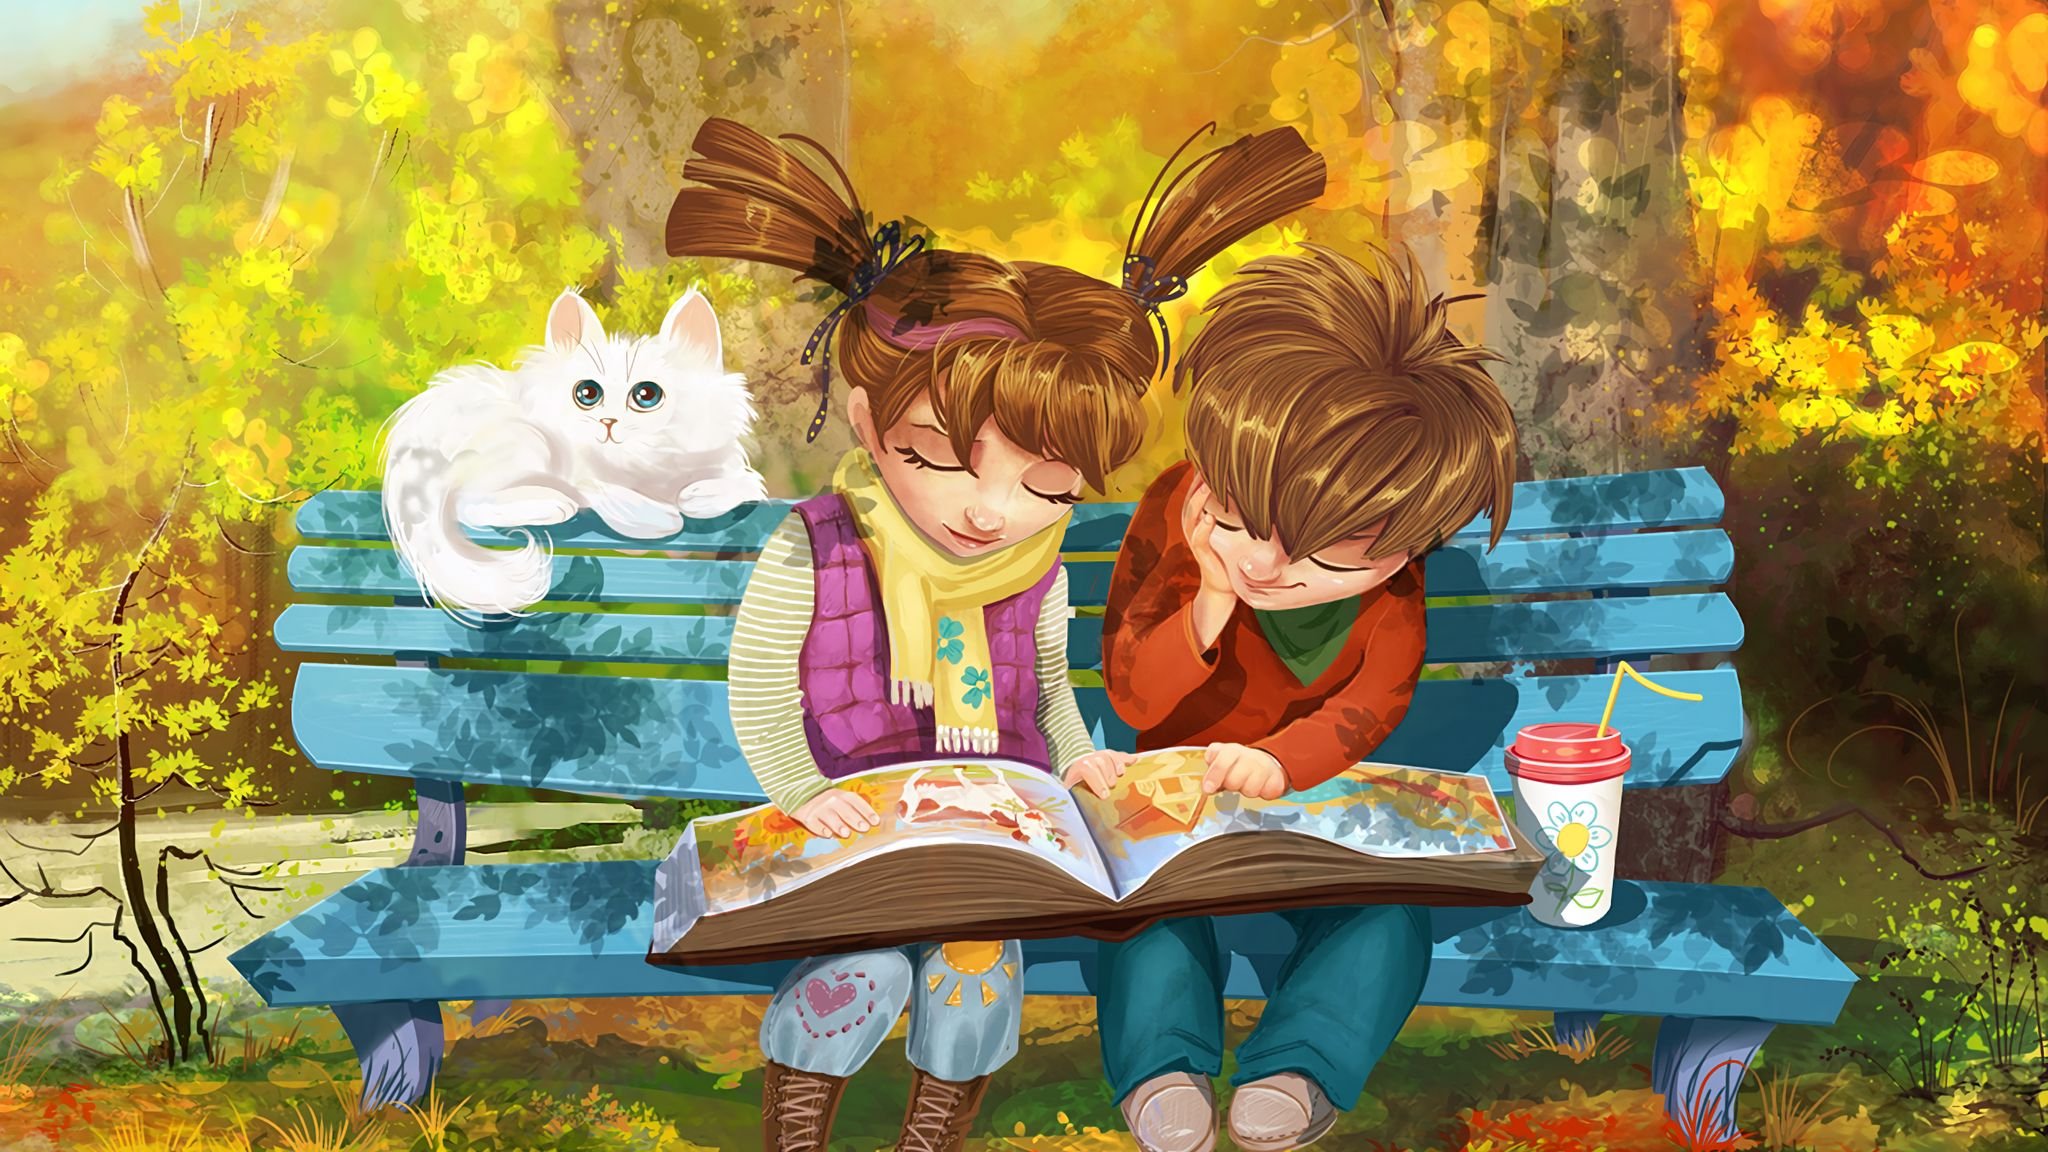 Читаем проды. Пойман за чтением. Лето с книжкой на скамейке. Иллюстрации к книгам. Мальчик и девочка на скамейке.